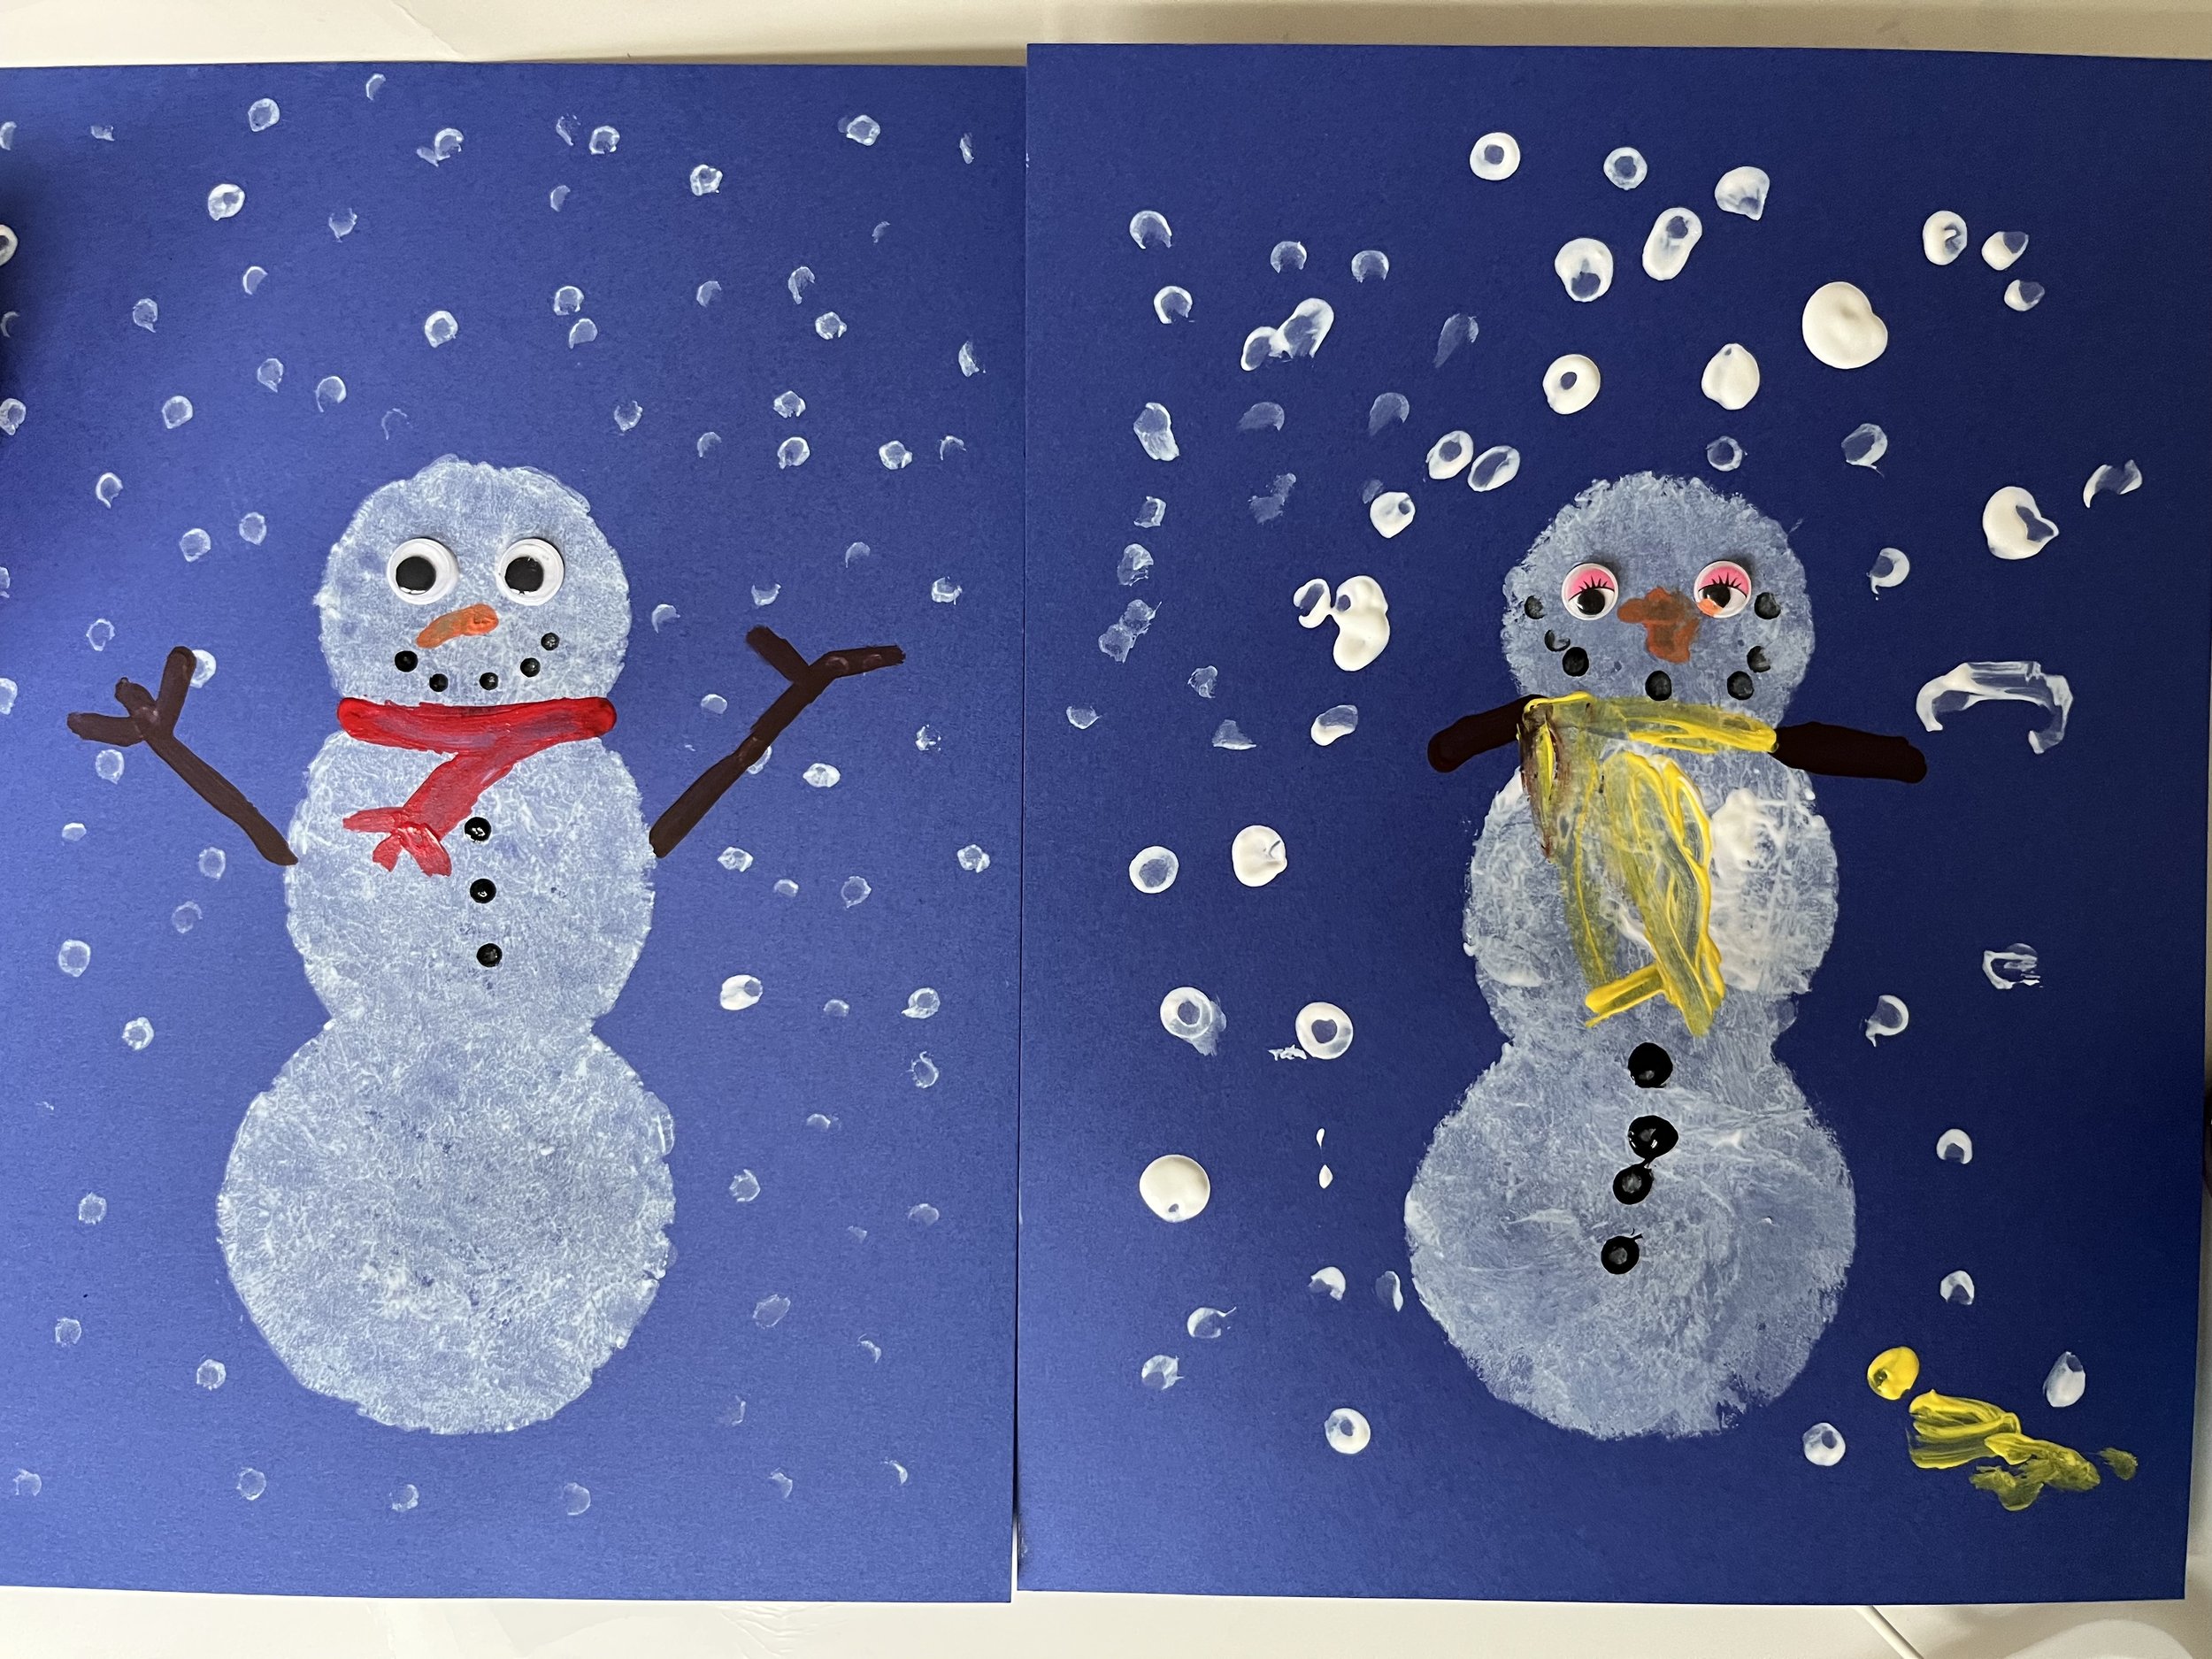 Cotton Ball Snowman Art - Friends Art Lab